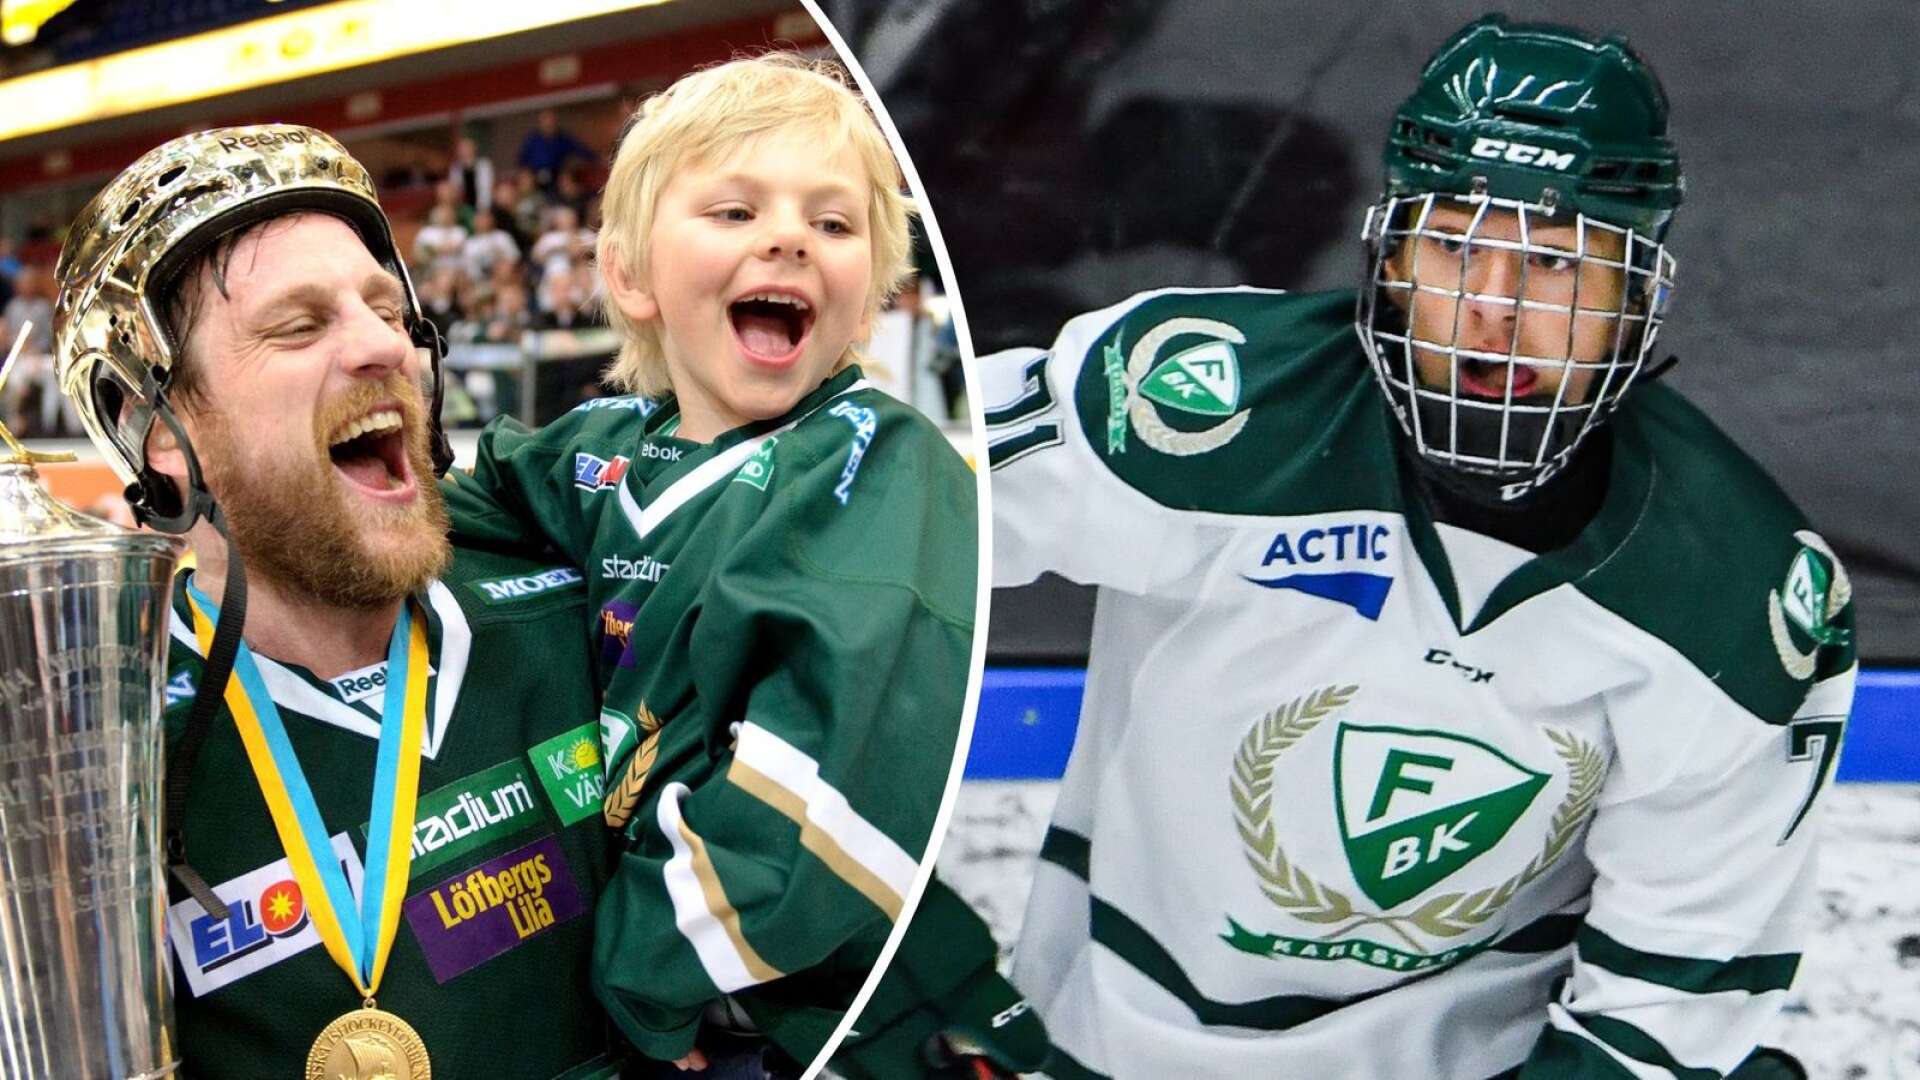 Jack Berglund drömmer om SM-guld • Berättar om kärleken till hockeyn – och sin far: ”Har alltid varit en stor idol för mig”